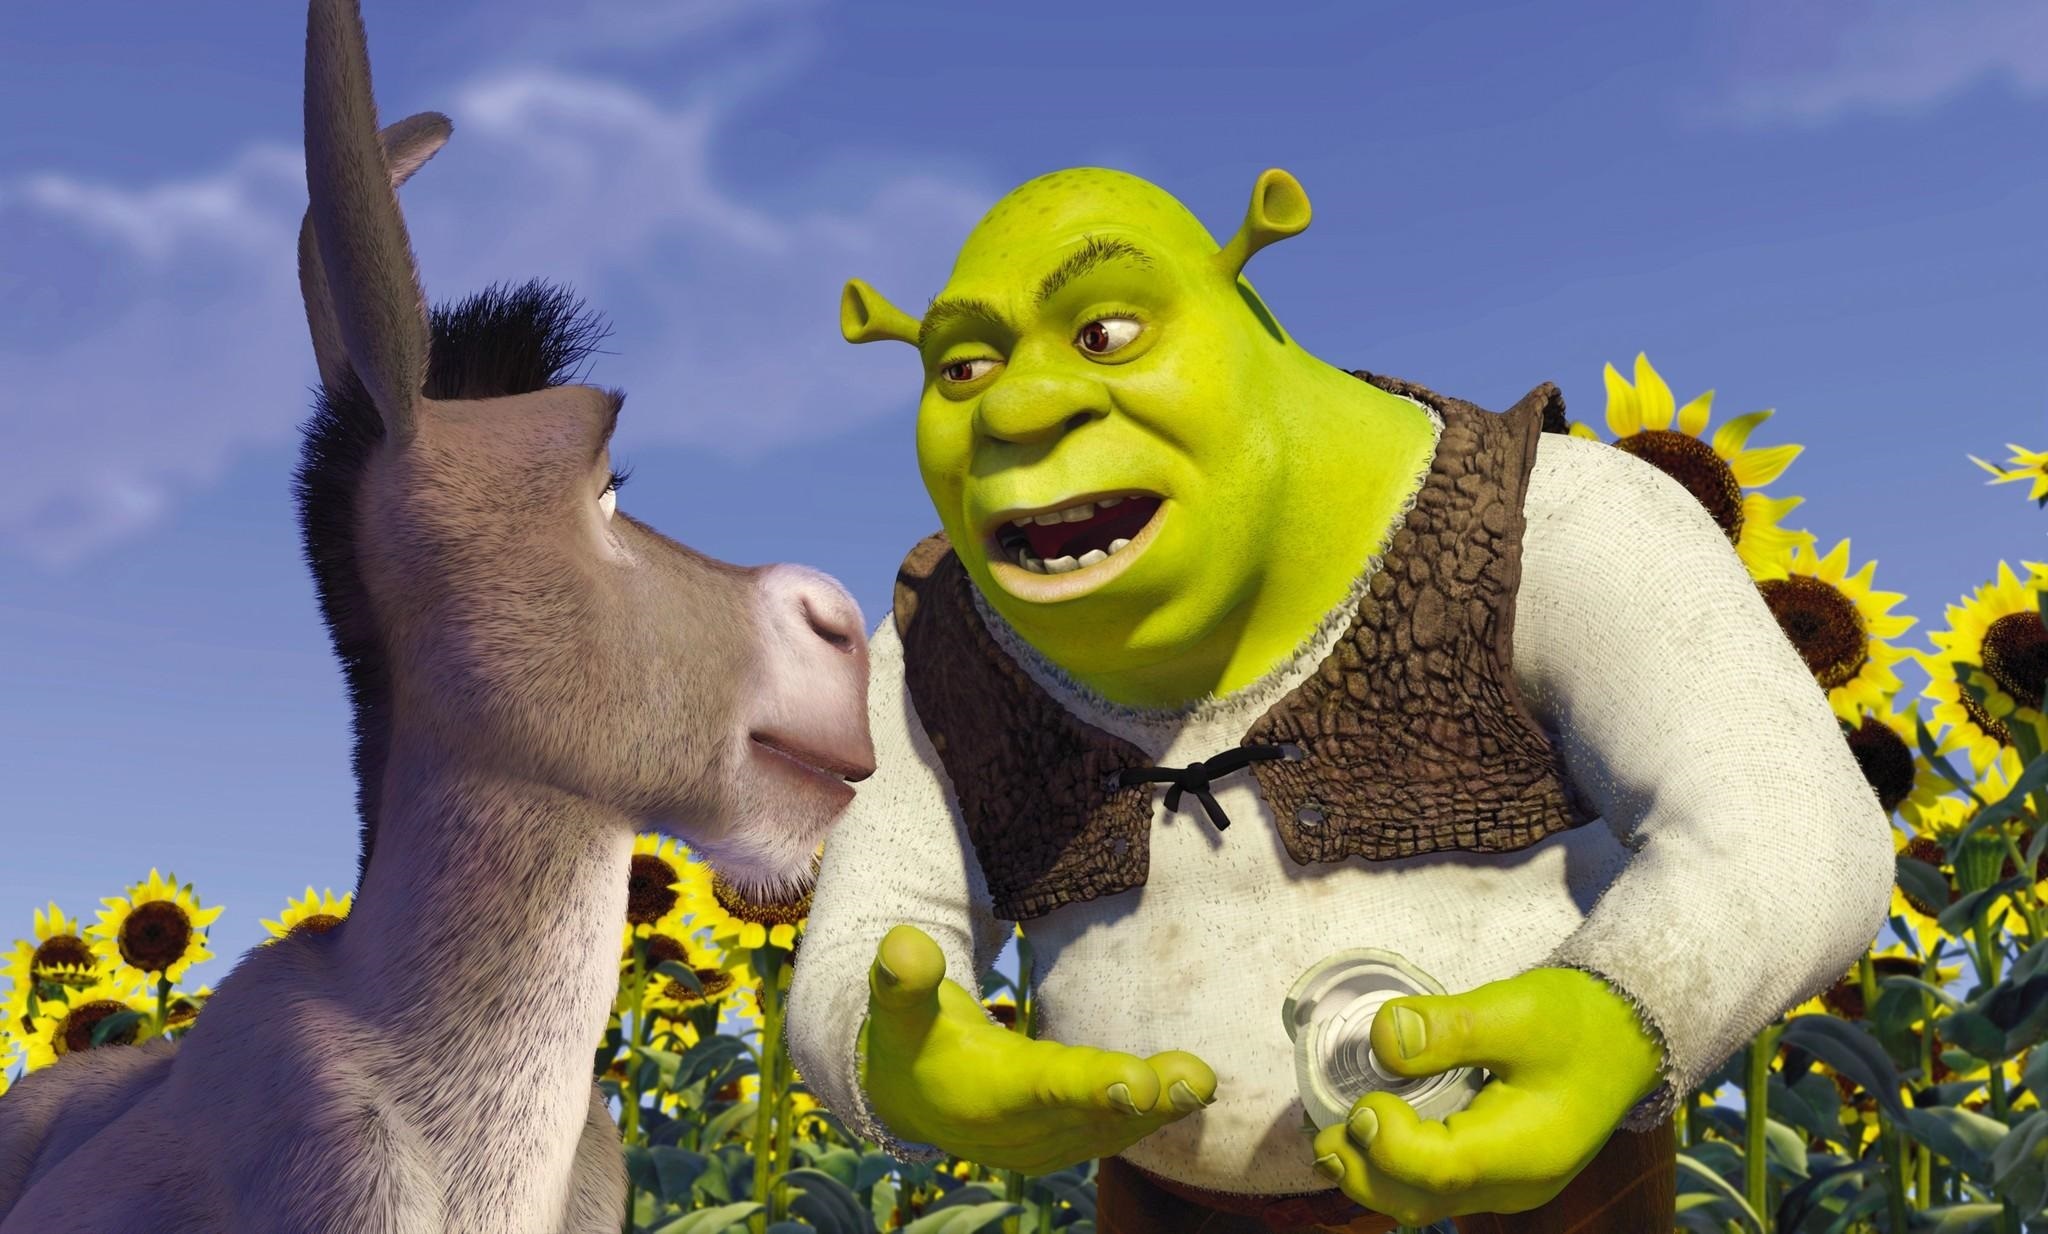 "Shrek", estrenada el 18 de mayo de 2001, es una de las cintas de animación preferida por niños y adultos, gracias a su hilarante sentido del humor que hace reír a pequeños y grandes. (DreamWorks Pictures)